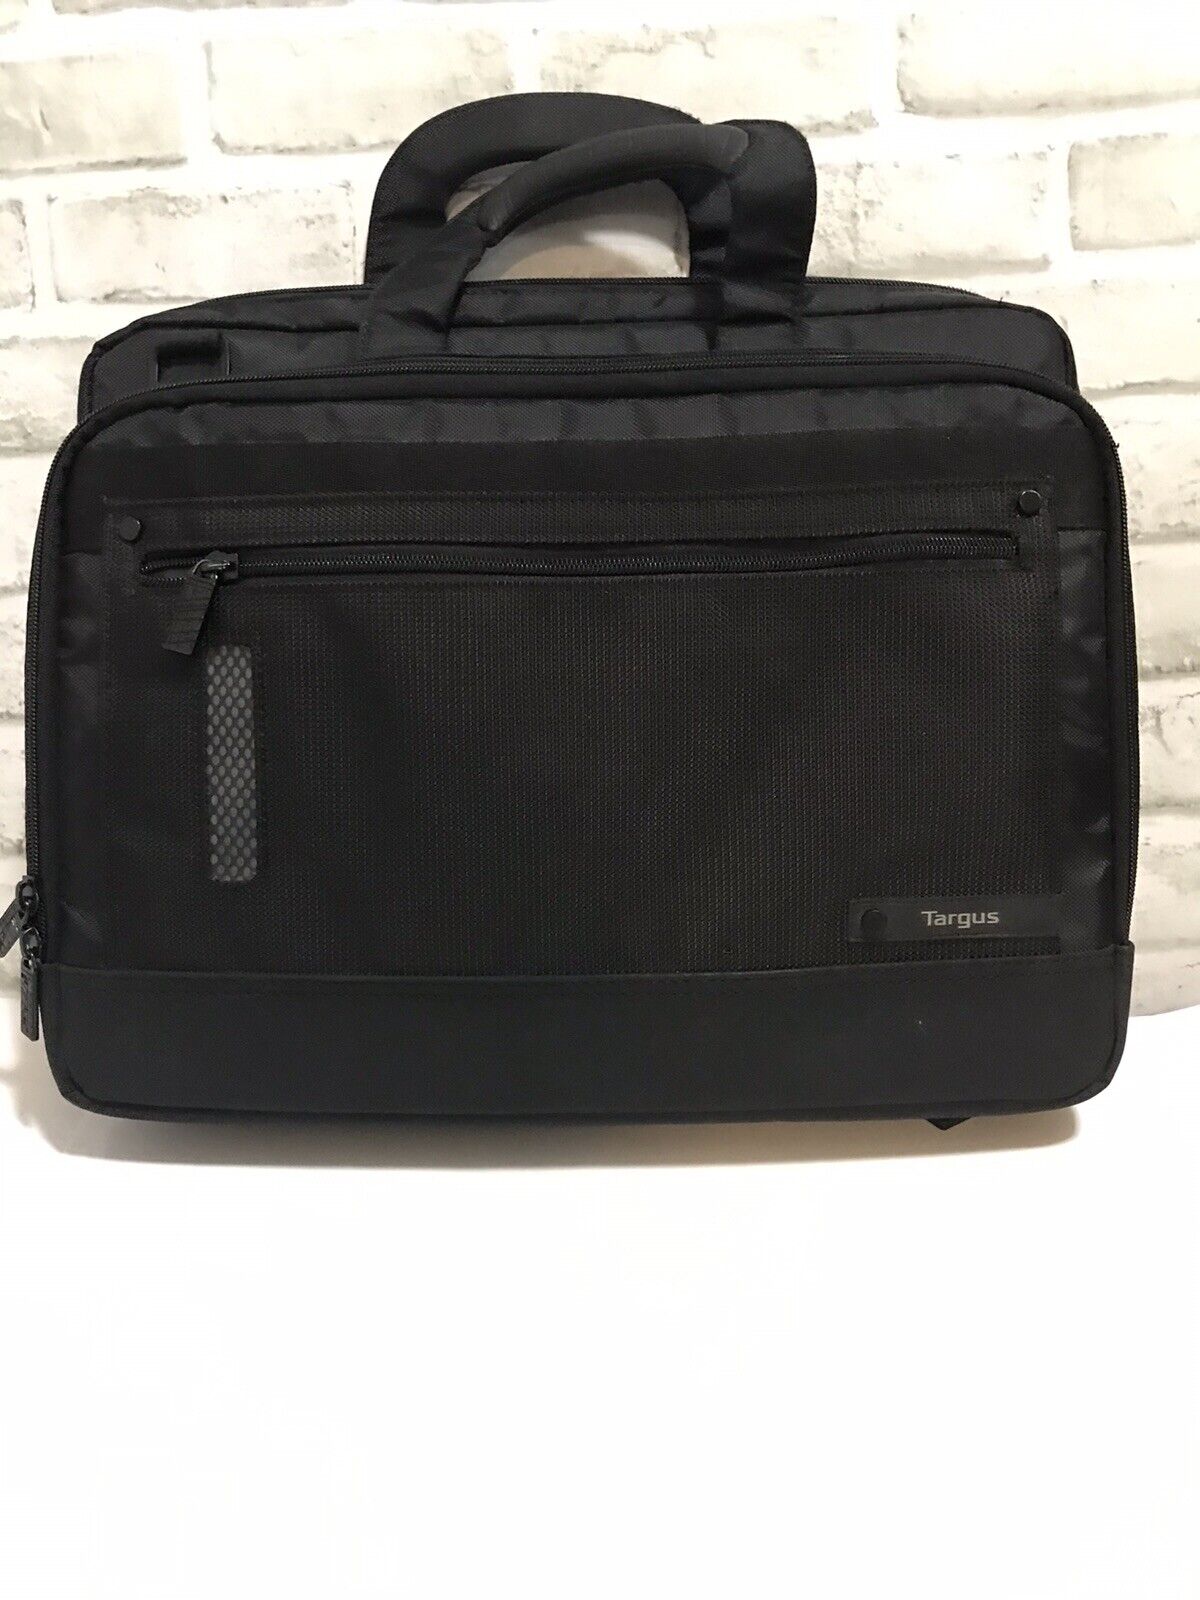 Targus Revolution Black Laptop Case 16” Bag Travel-Checkpoint Friendly NWOT